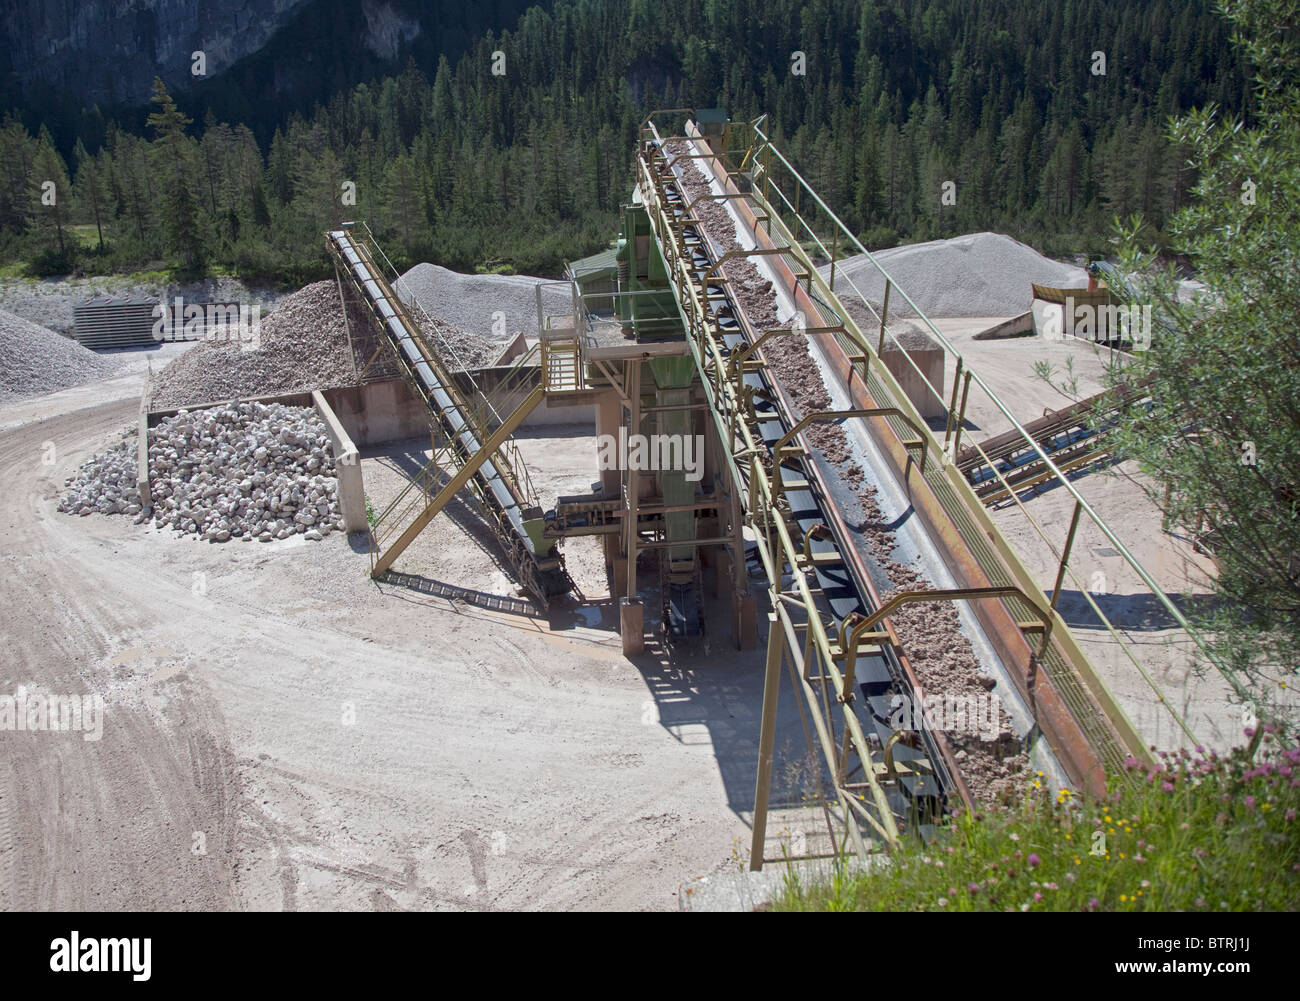 Rock impianto di estrazione nei pressi di Armentarola, Dolomiti, Italia Foto Stock